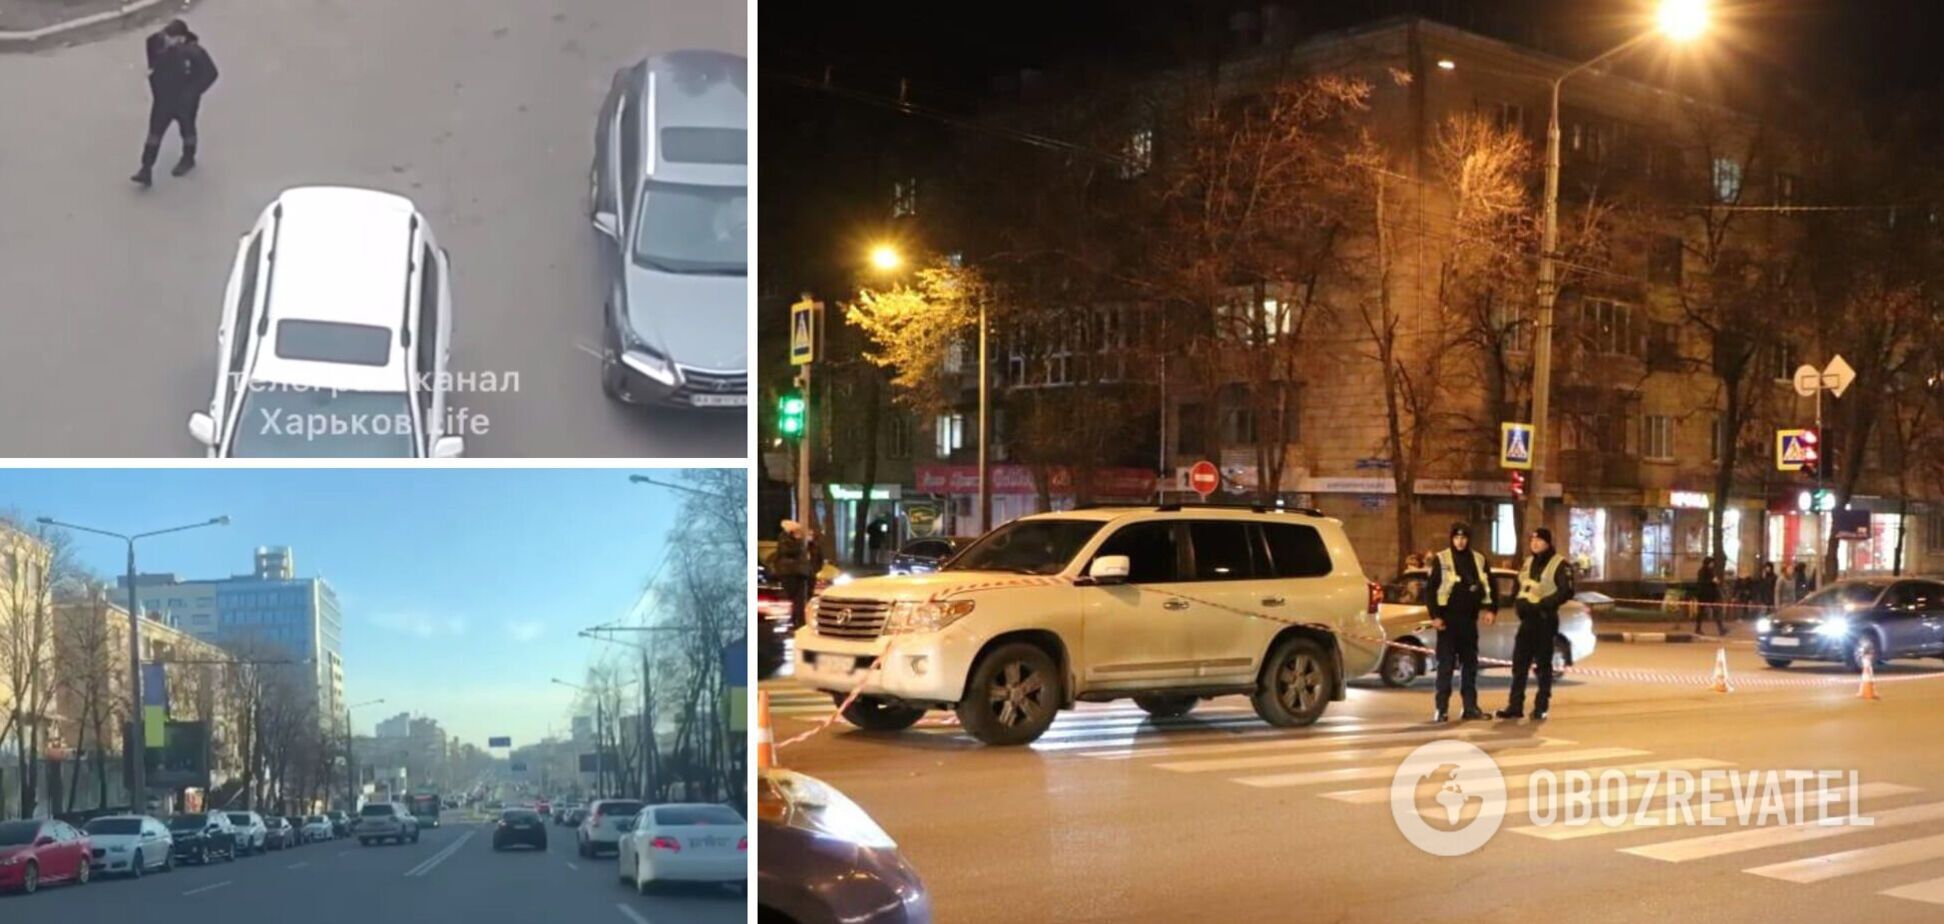 Міг бути під наркотиками: що відомо про водія, який збив дітей у Харкові. Фото та відео